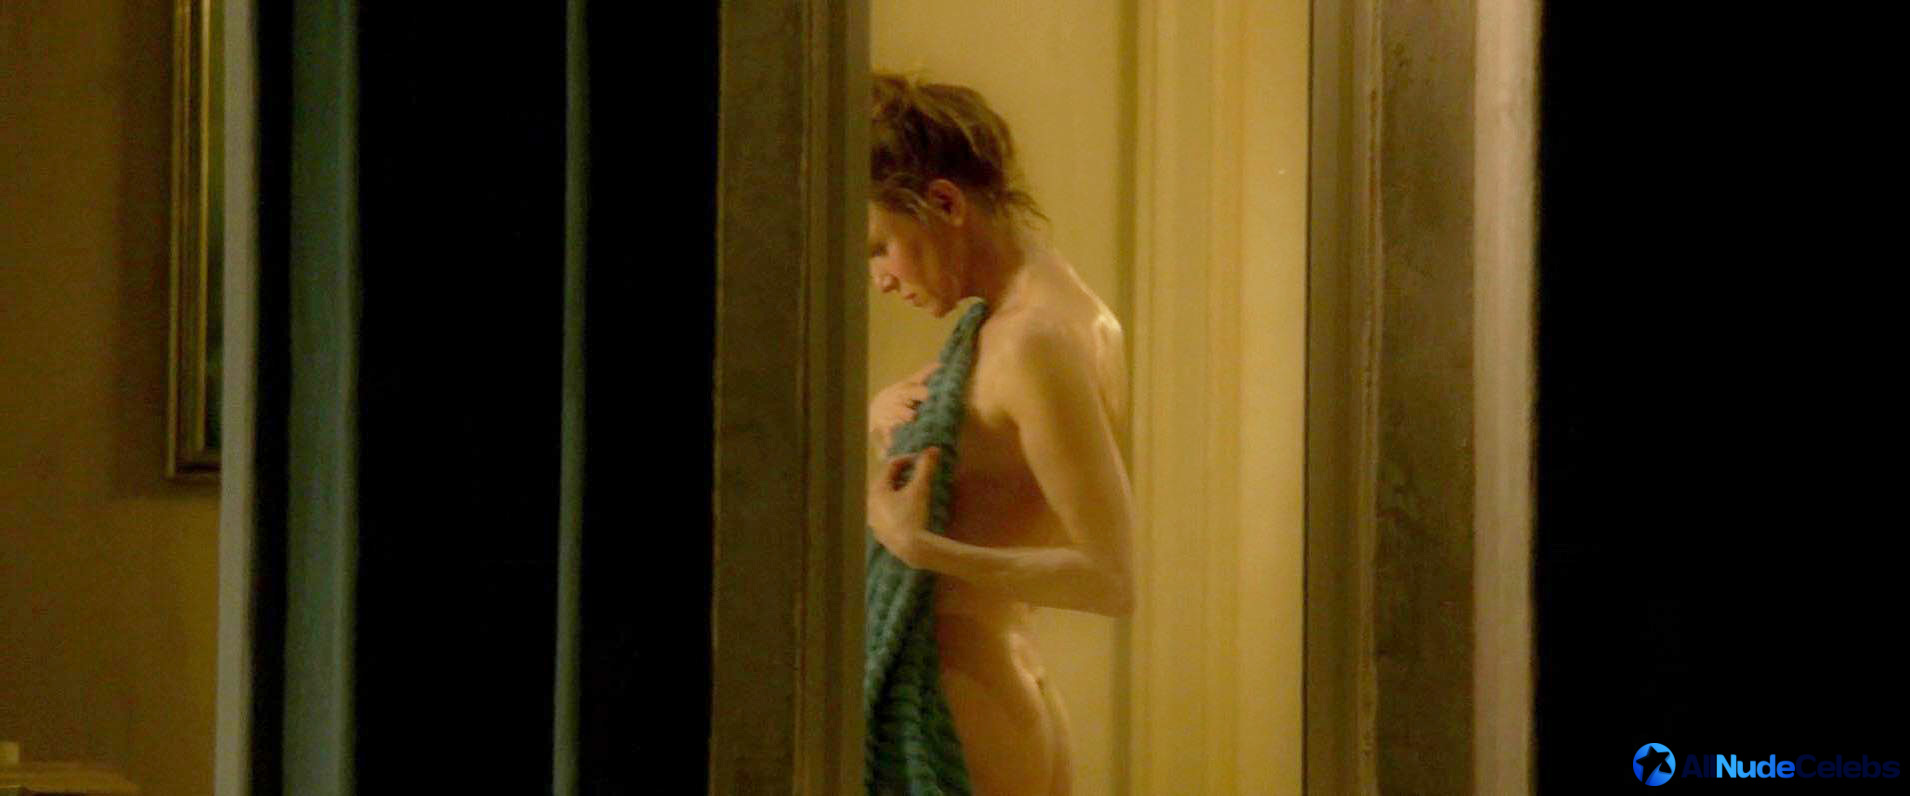 Renee zellweger topless